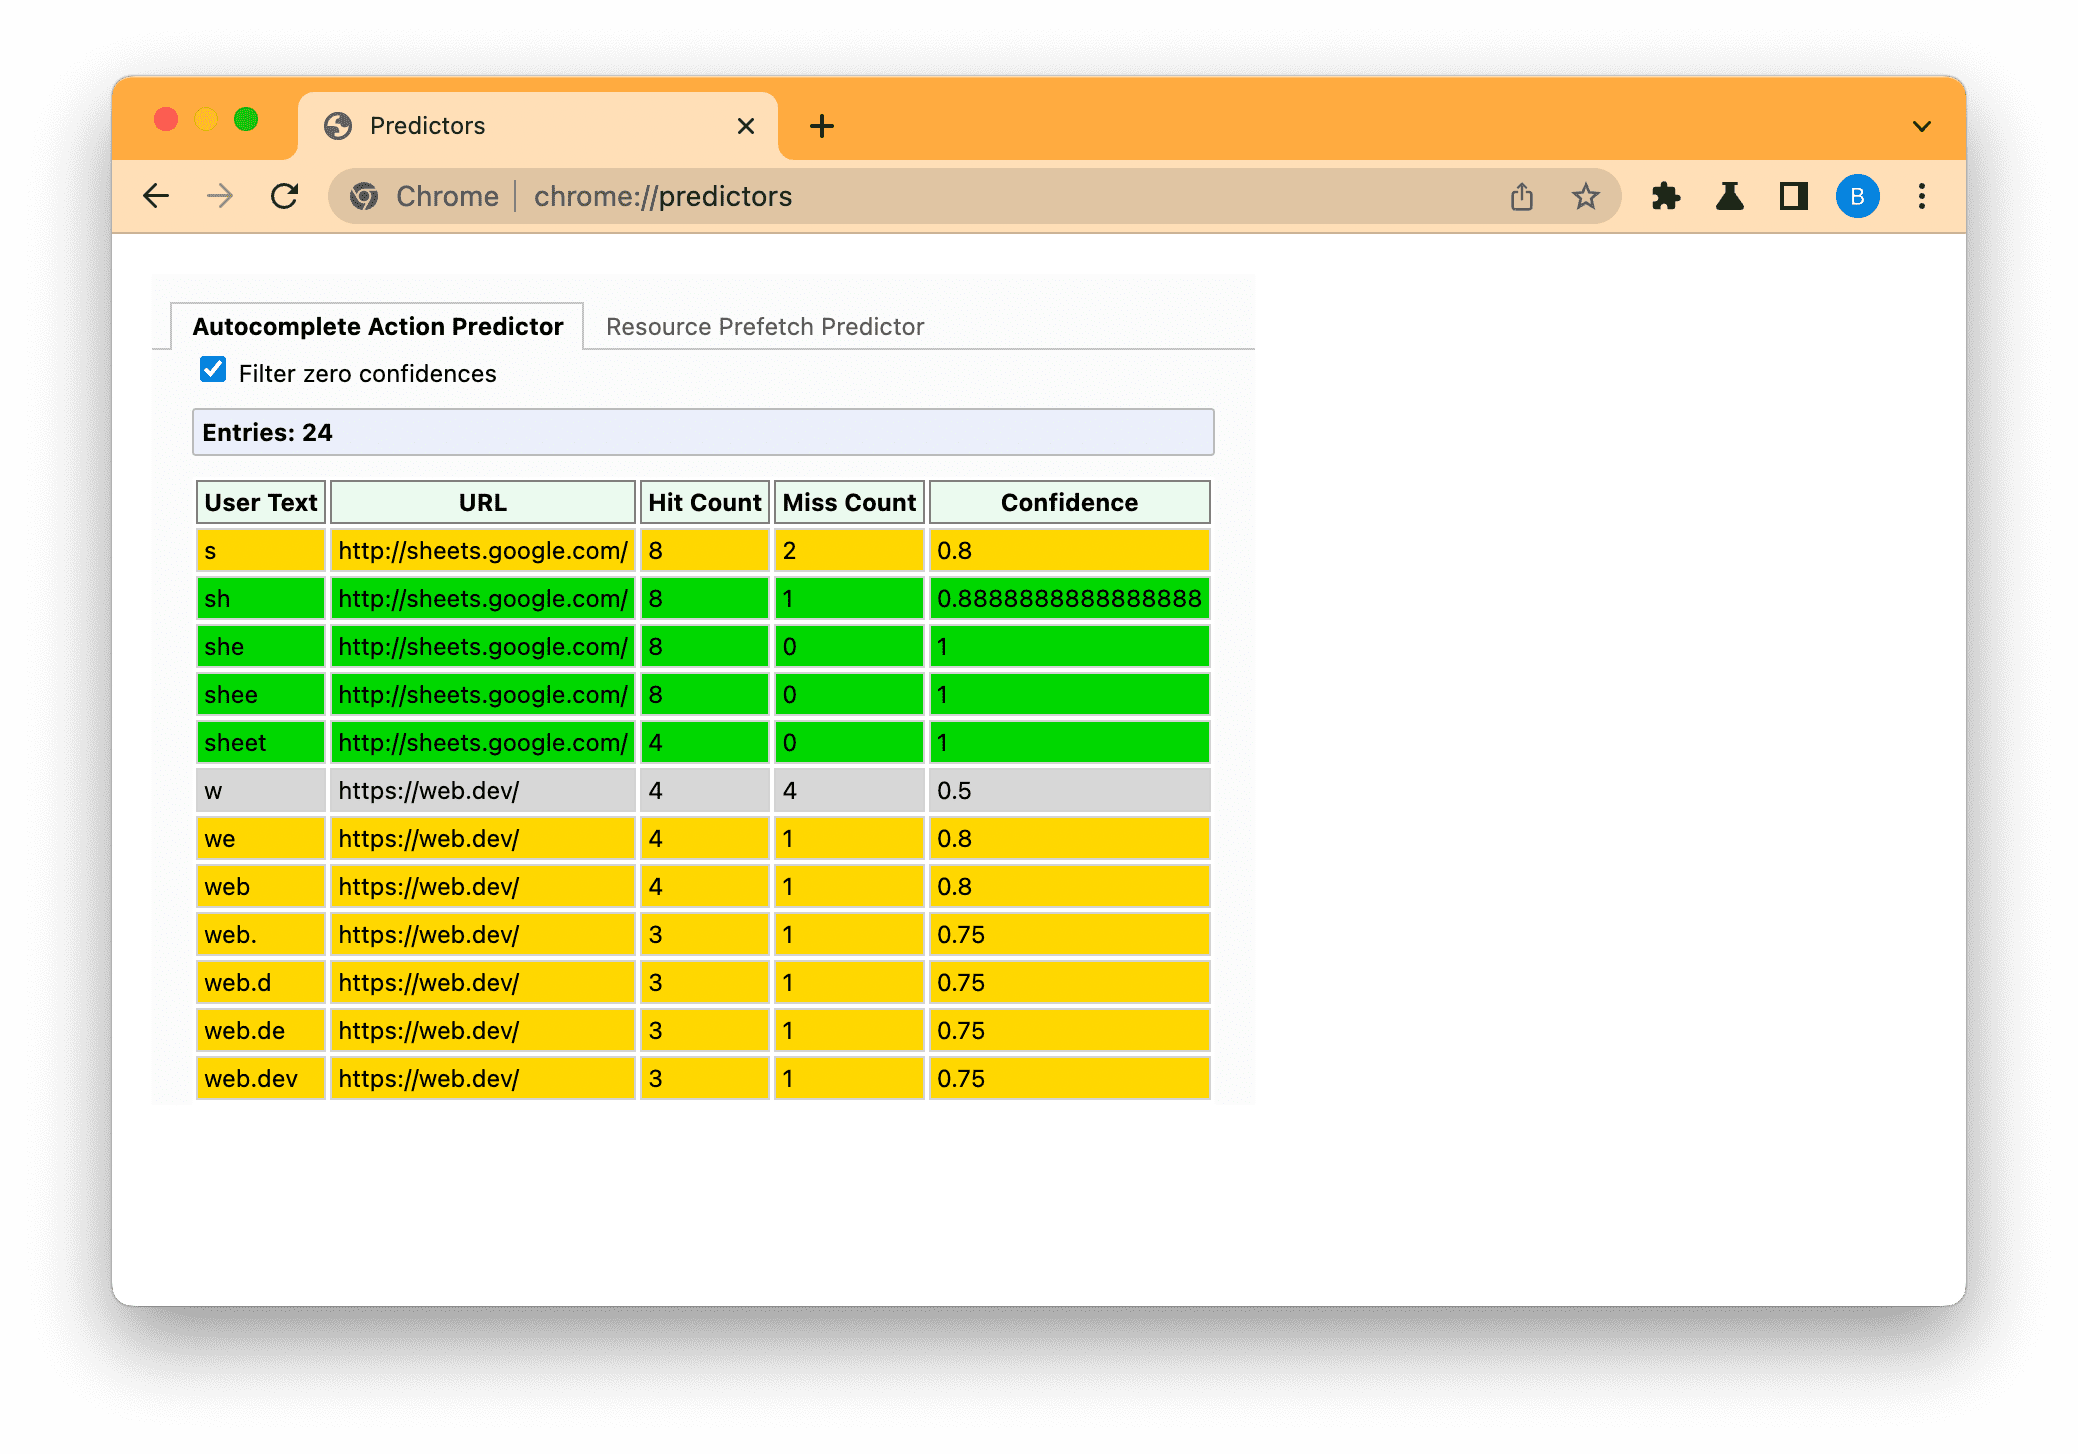 Screenshot halaman Predictor Chrome yang difilter untuk menampilkan prediksi rendah (abu-abu), sedang (kuning), dan tinggi (hijau) berdasarkan teks yang dimasukkan.